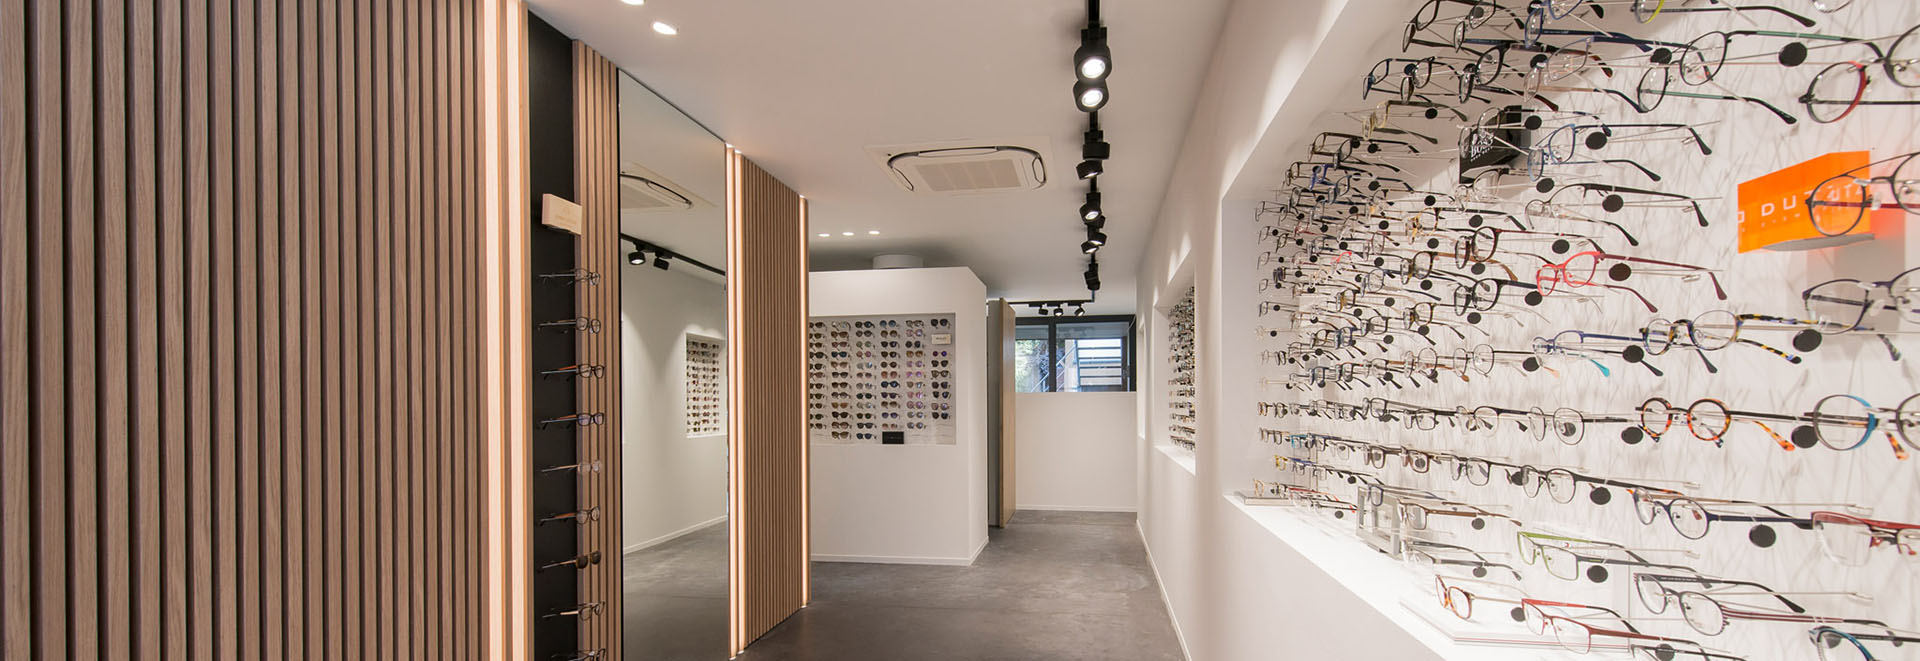 Optiek Pieters Kortrijk - Brillen, lenzen, zonnebrillen